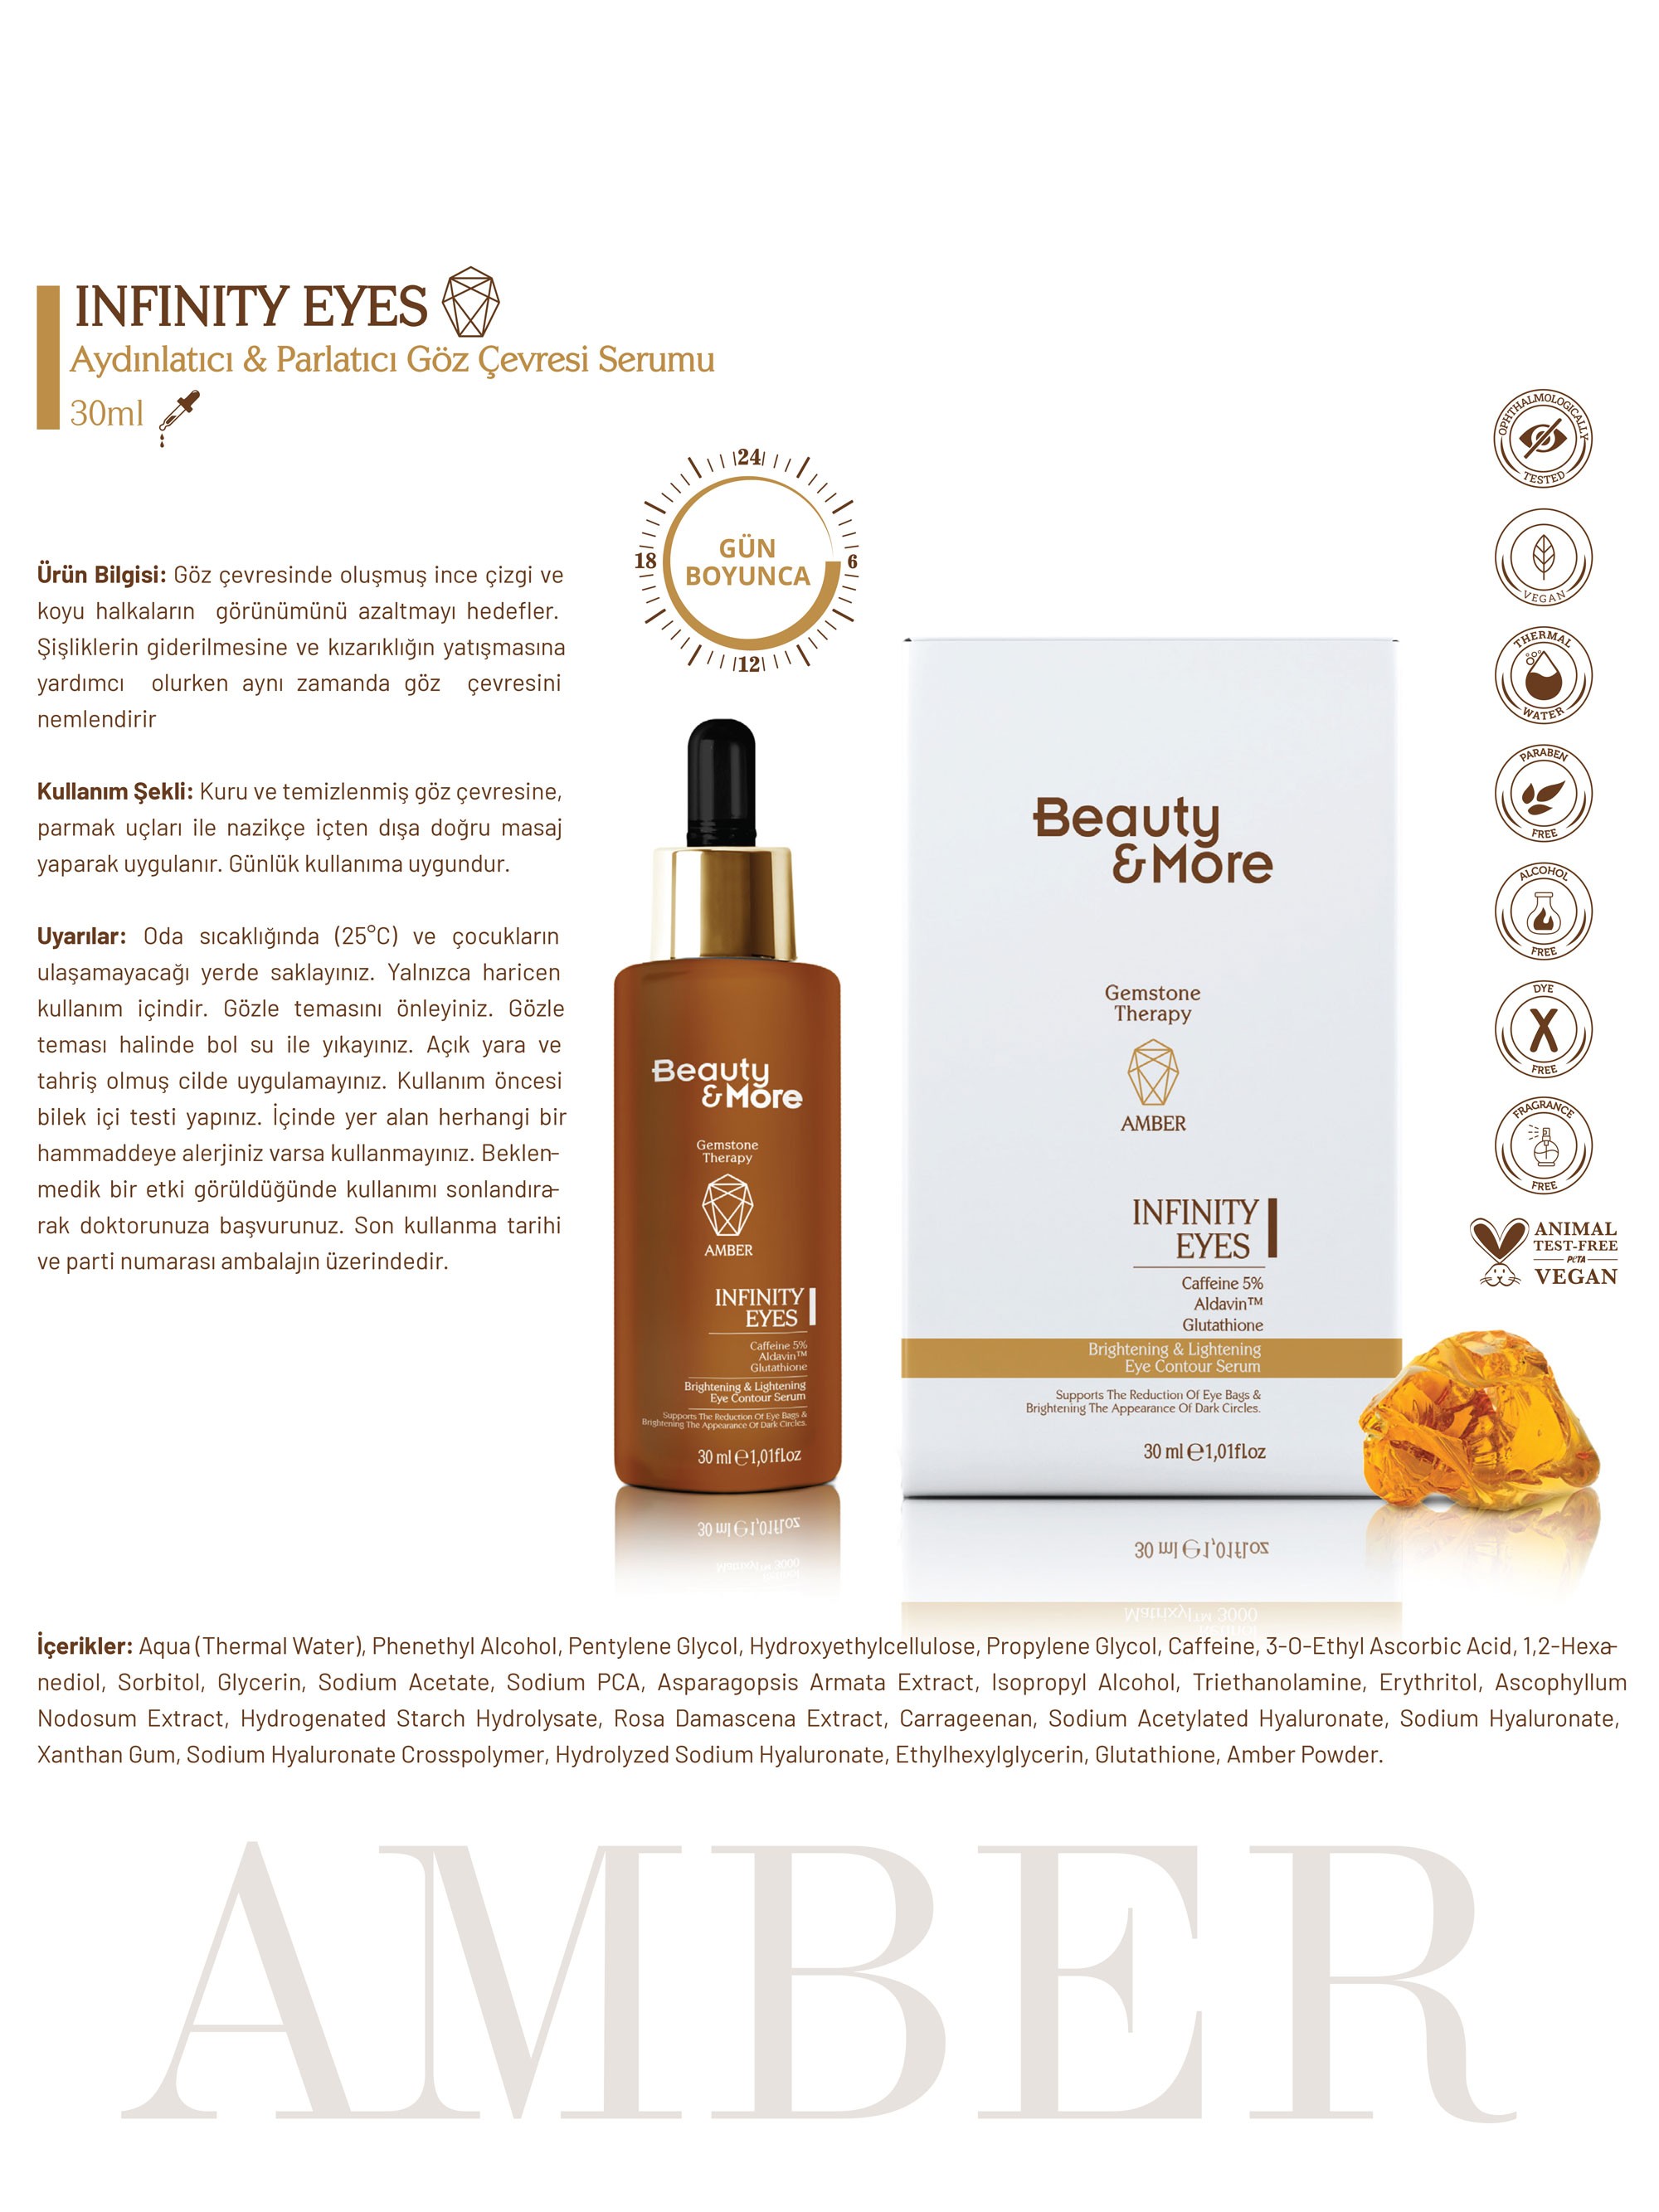 Beauty&More Amber Infinity Eyes Aydınlatıcı ve Parlatıcı Göz Çevresi Serumu 30 ml